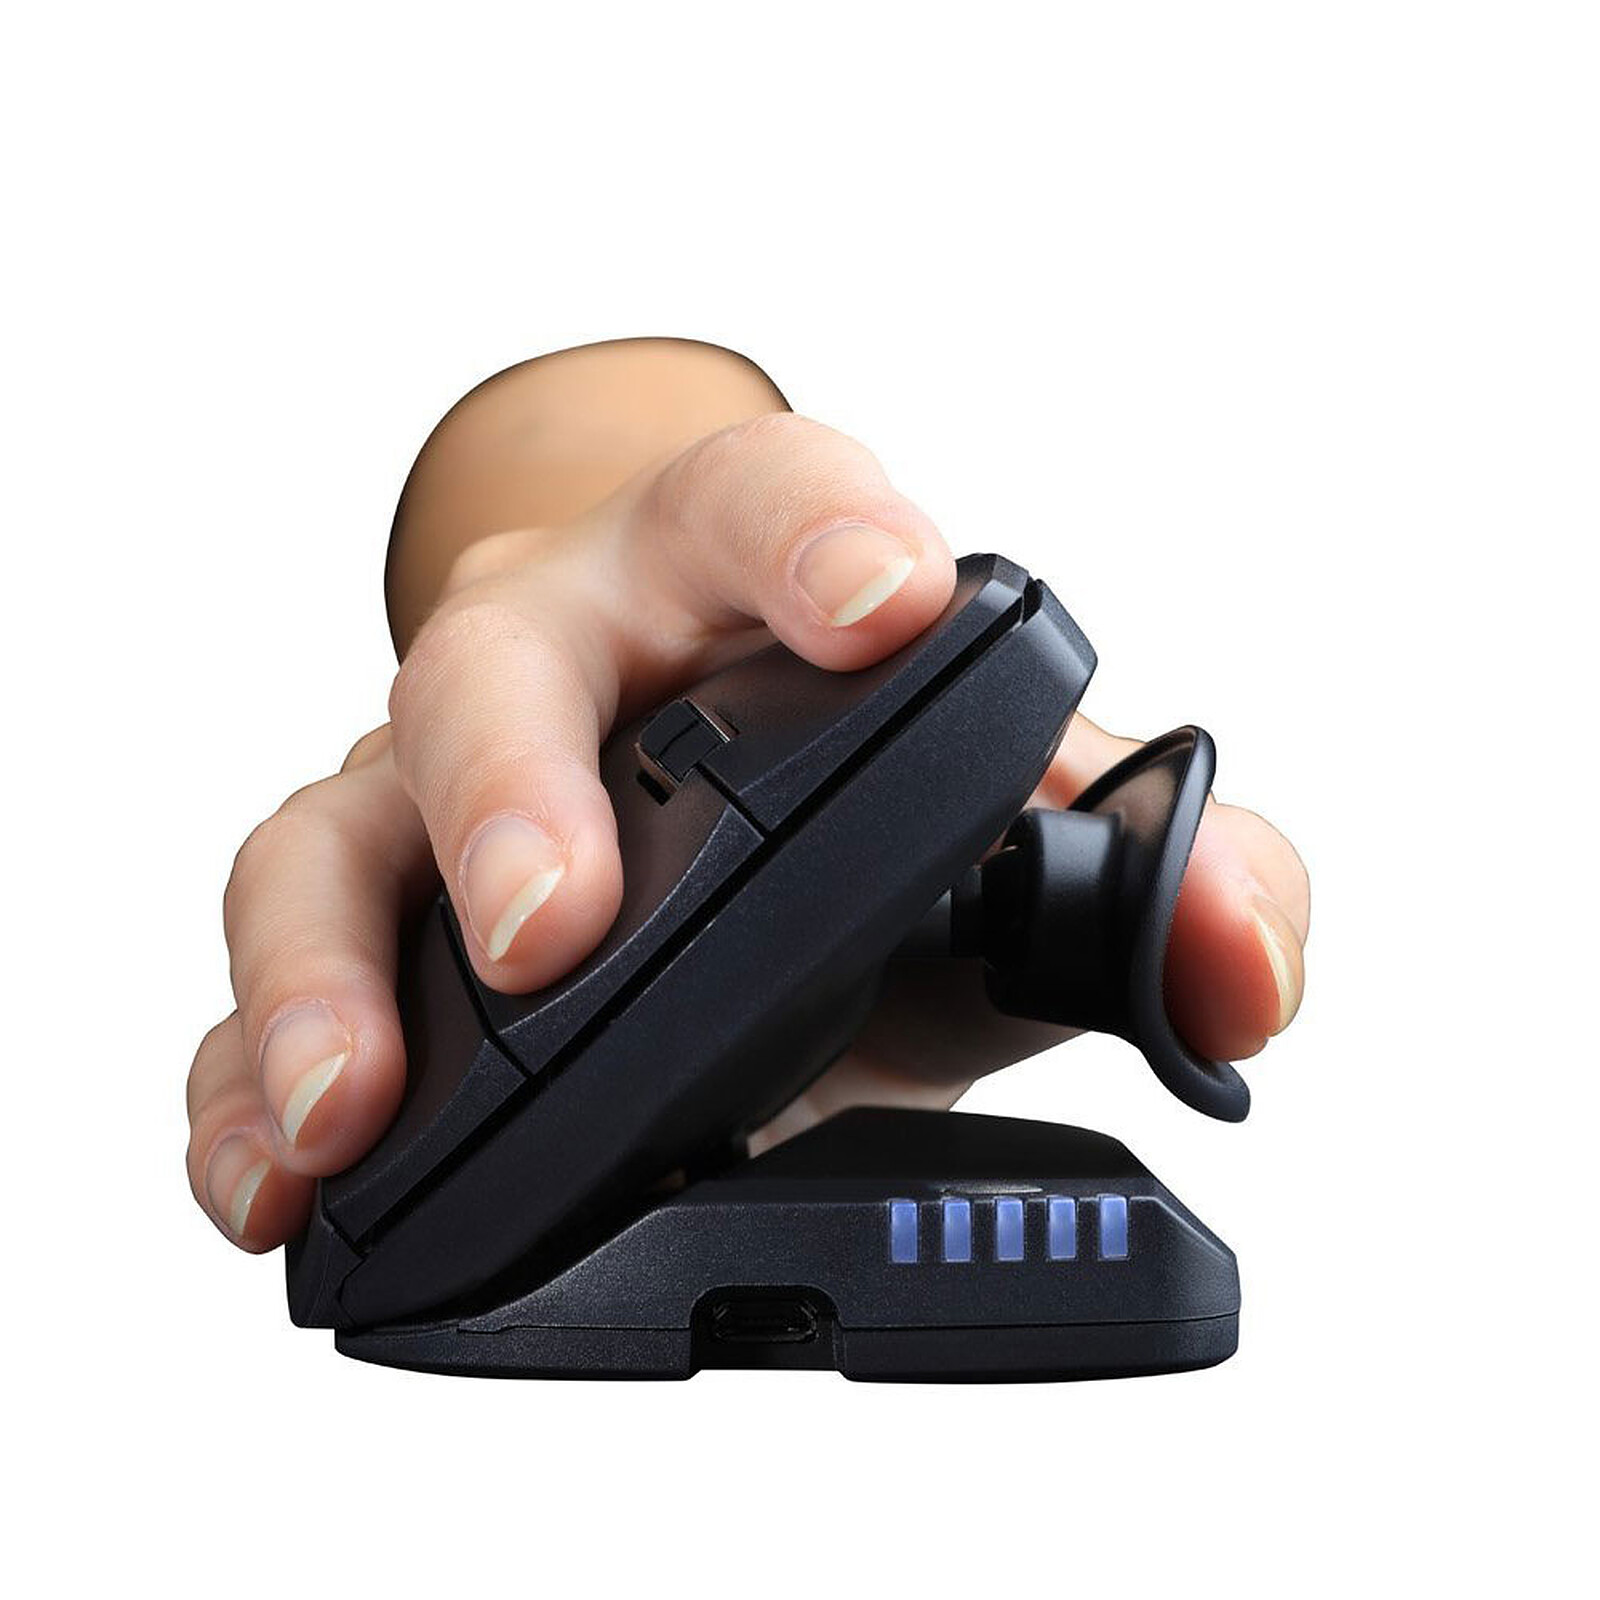 Souris sans fil Ergonomic MW 4500 Cherry, port USB, design pour droitiers  ergonomique, acheter à prix avantageux